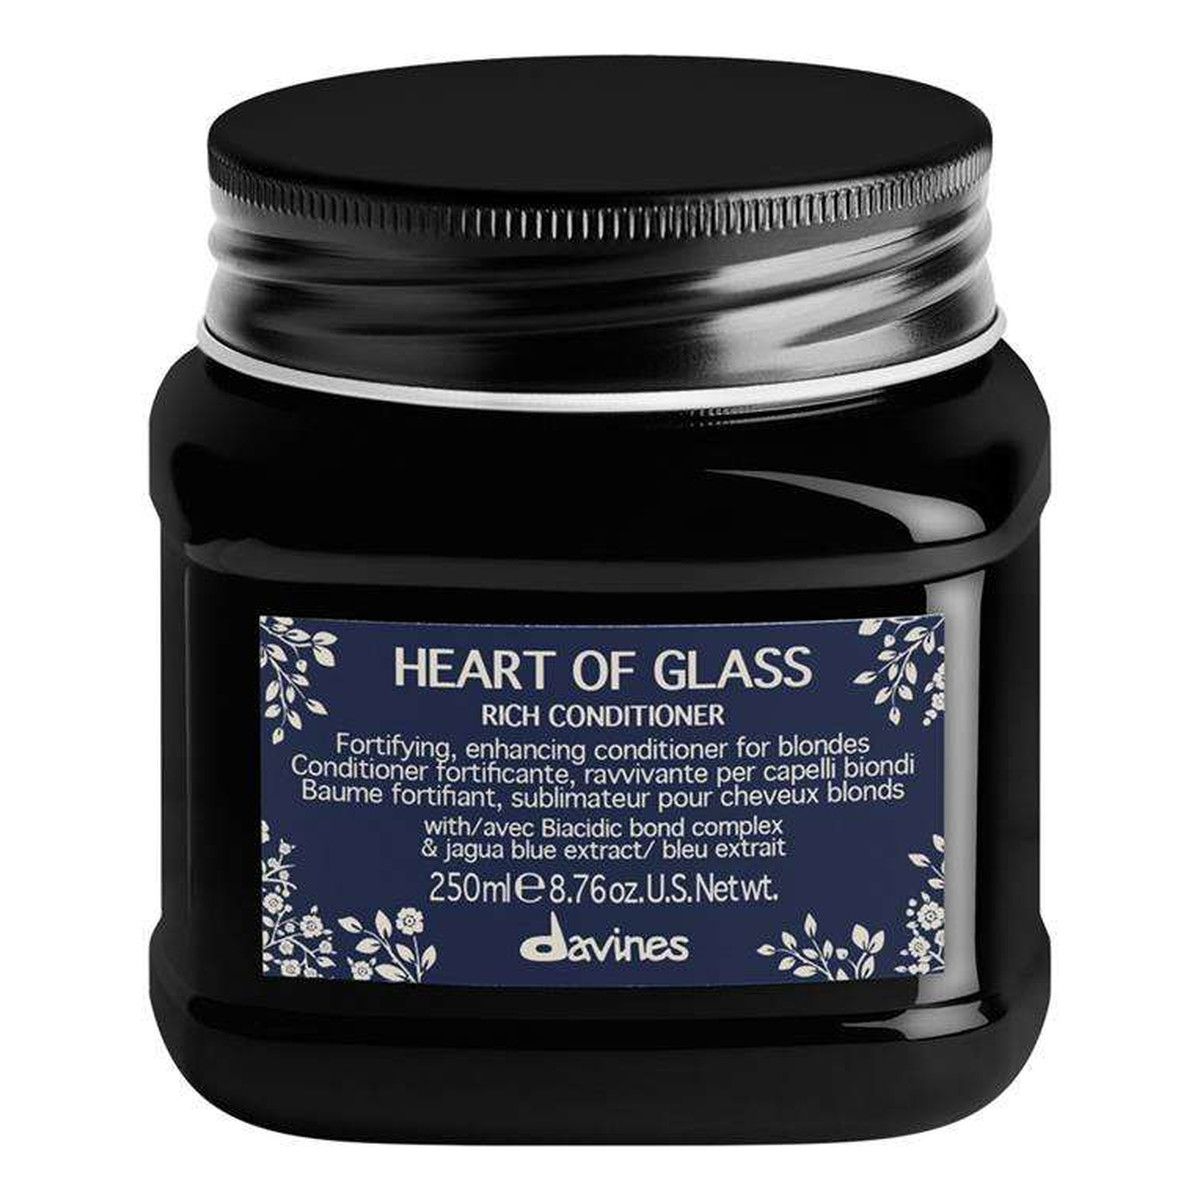 Davines Heart of glass rich conditioner odżywka do włosów blond 250ml